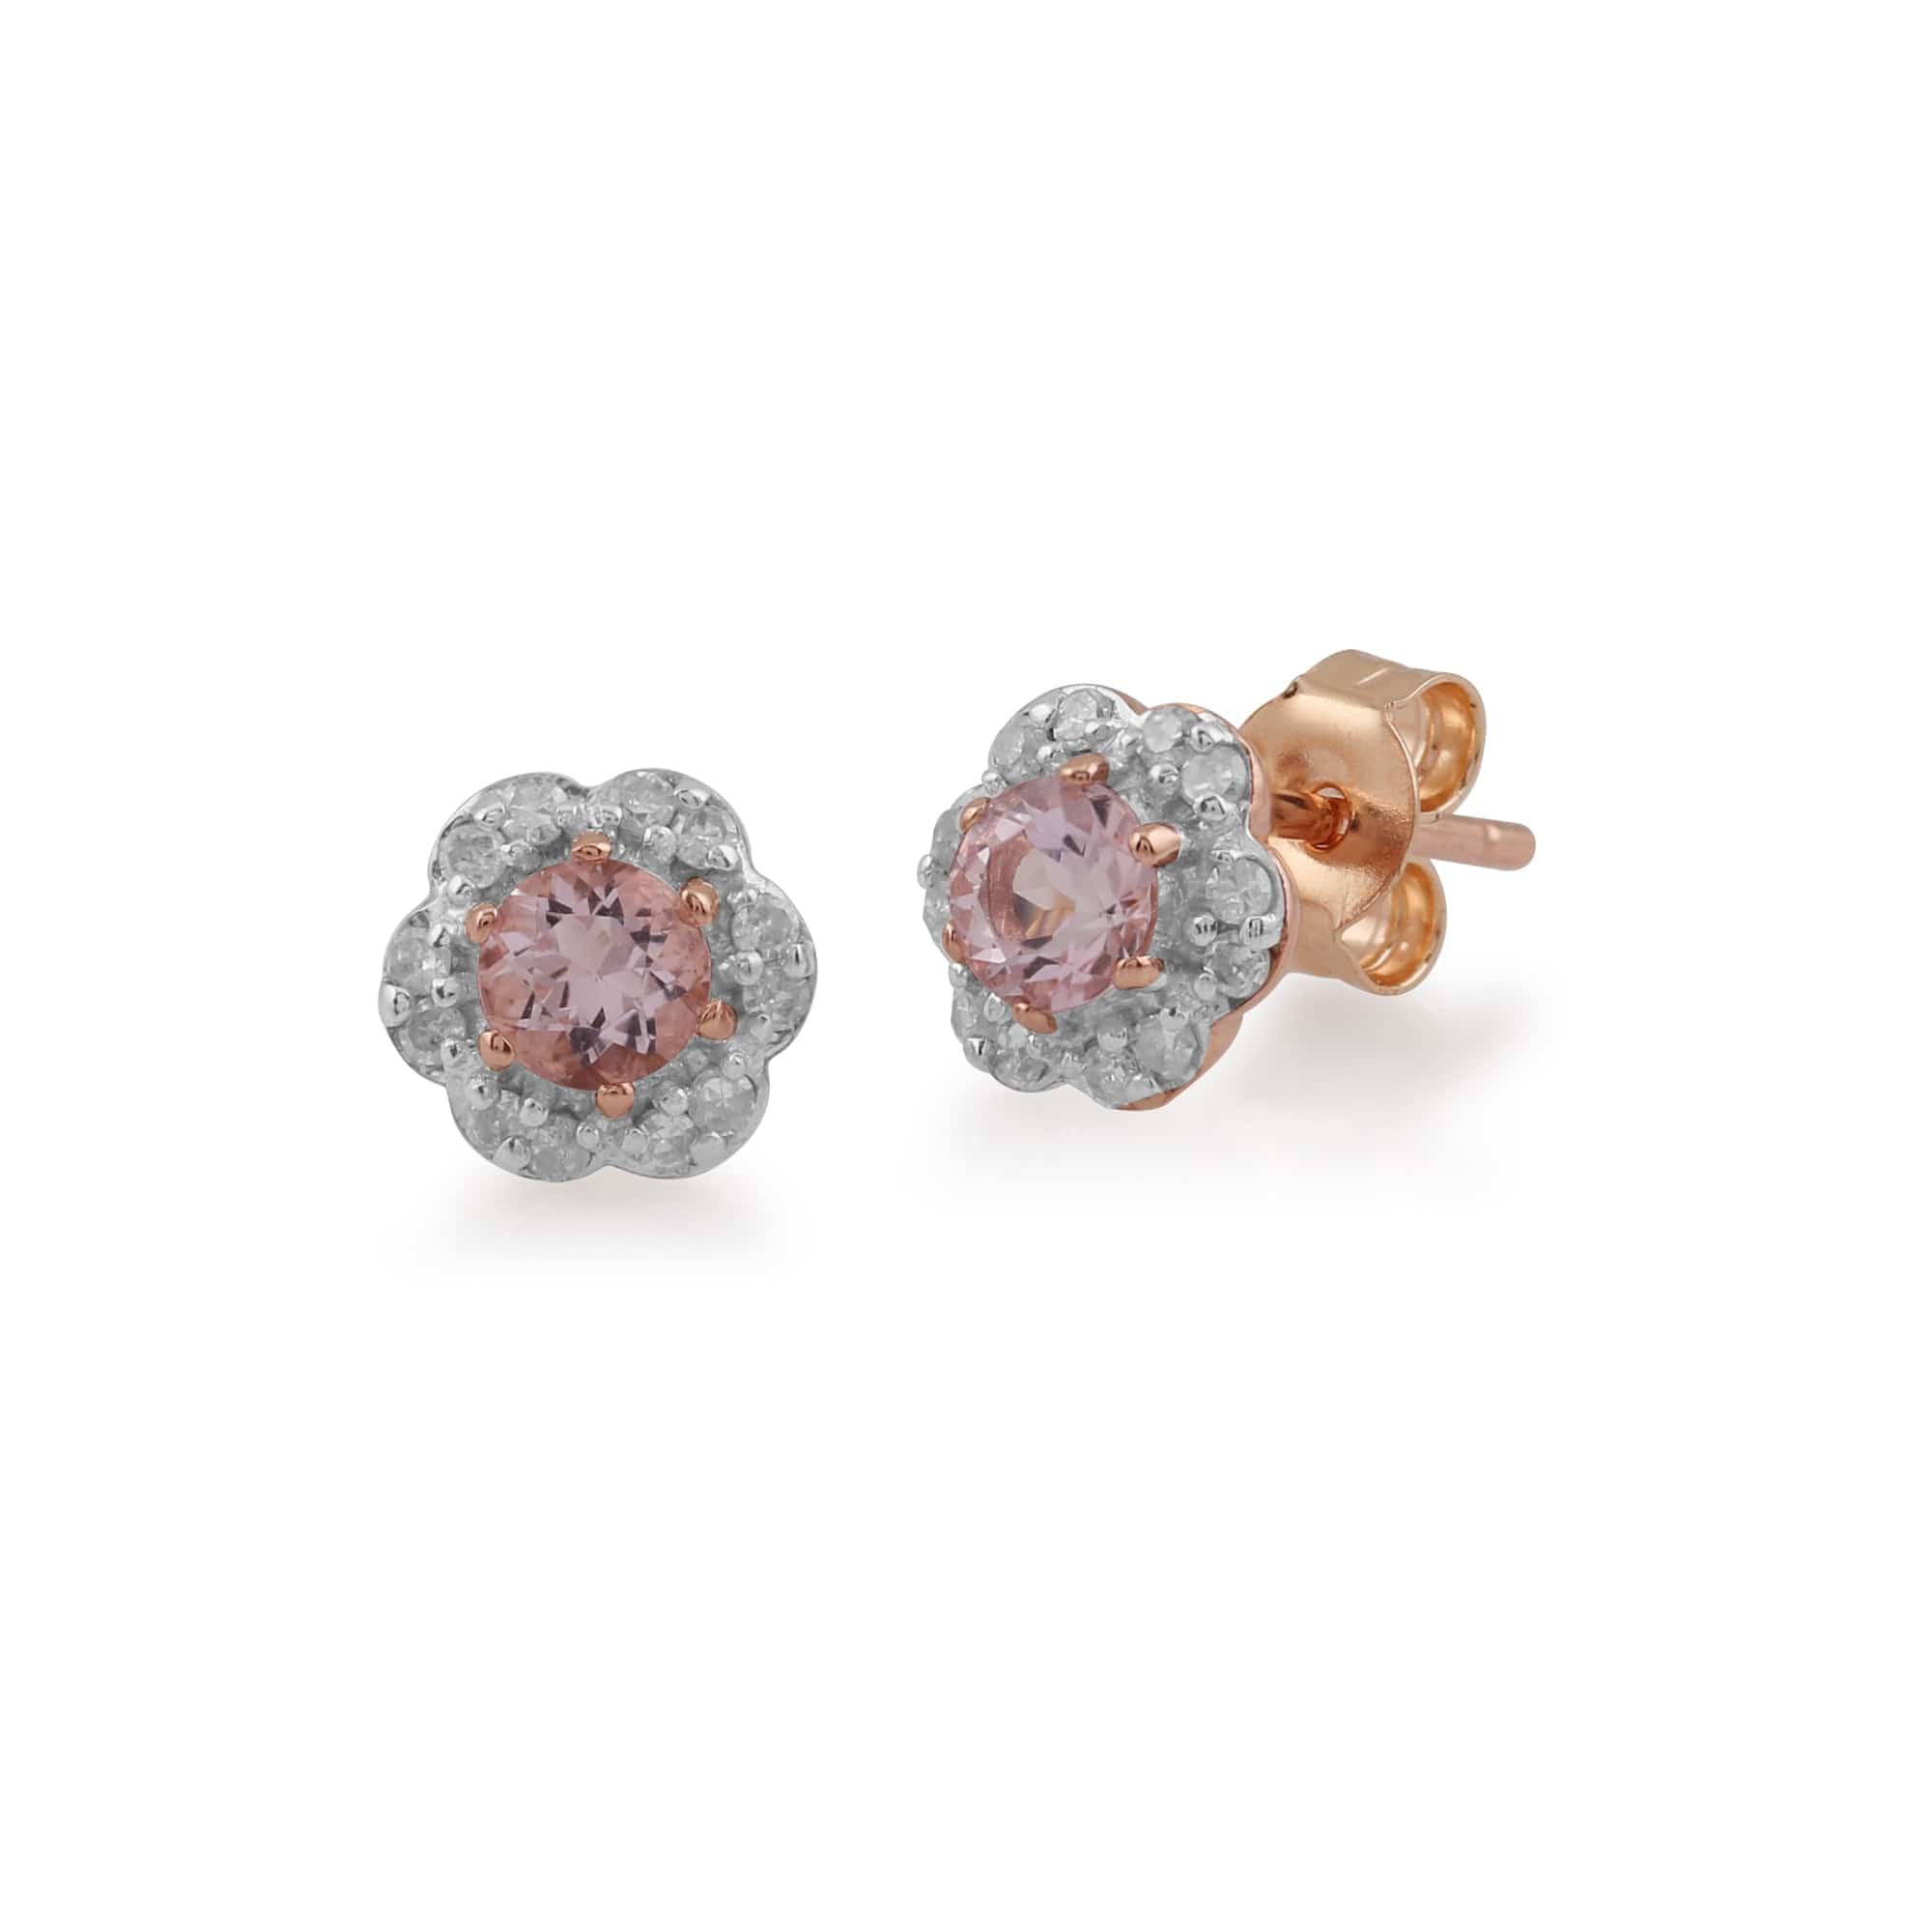 Floral Round Morganite & Diamond 9ct Rose Gold Earring & Ring Set - Gemondo